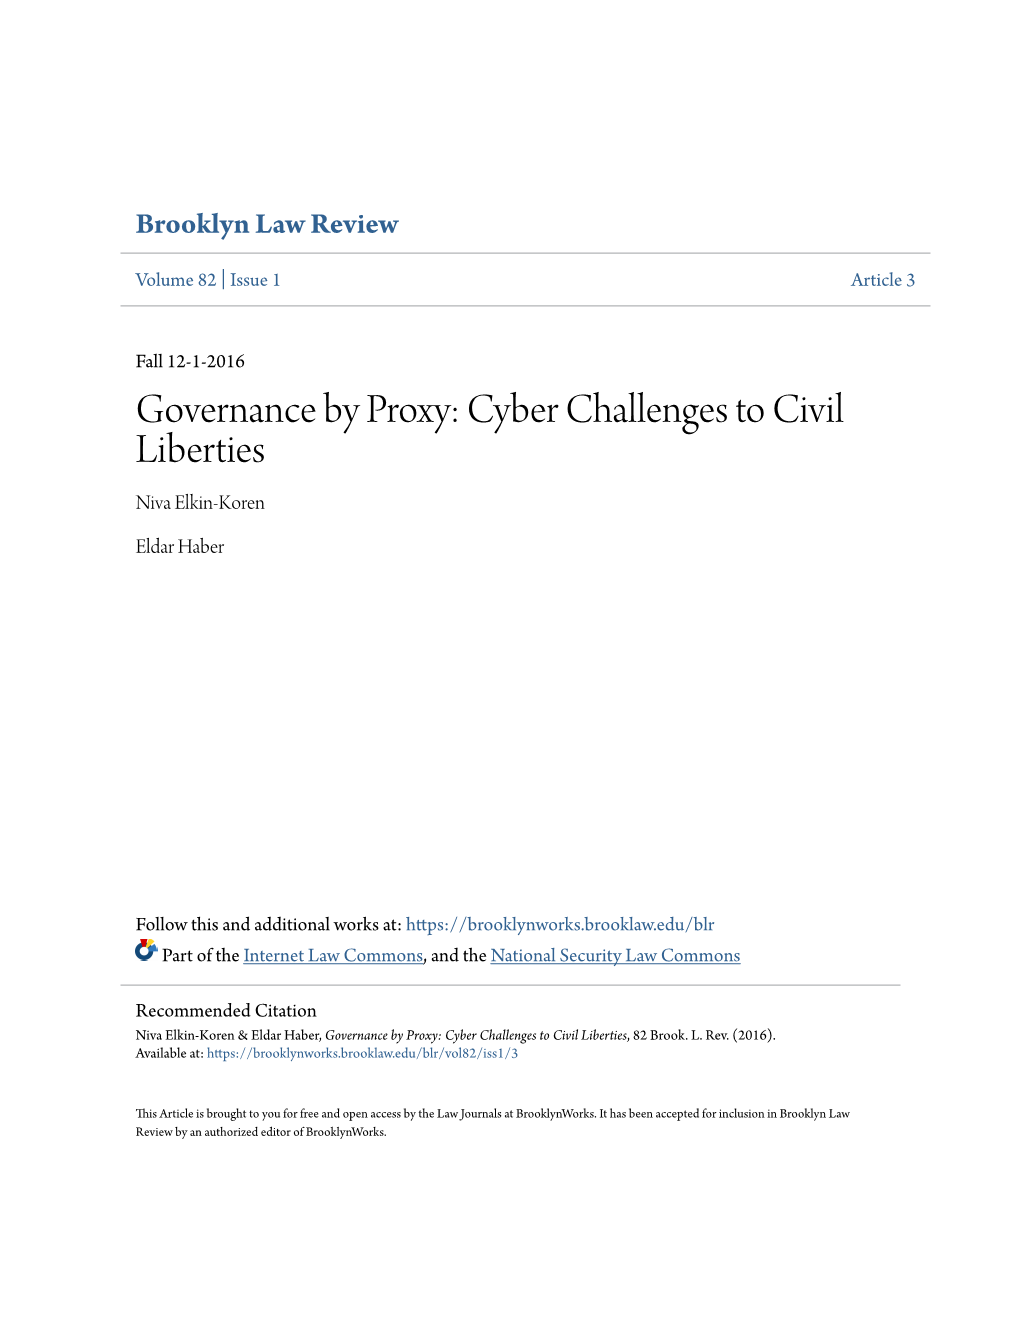 Governance by Proxy: Cyber Challenges to Civil Liberties Niva Elkin-Koren